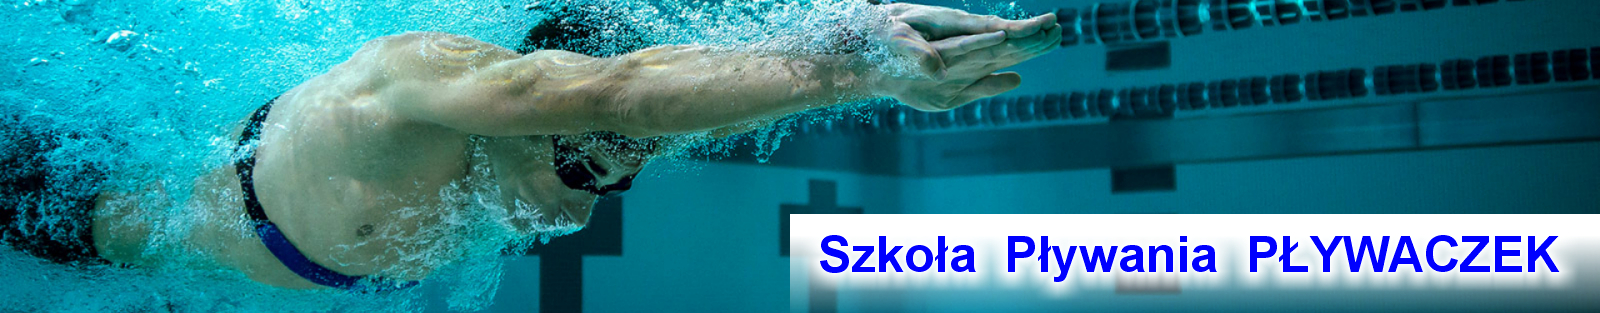 SZKOŁA PŁYWANIA PŁYWACZEK, nauka pływania dla dzieci i dorosłych Gdynia